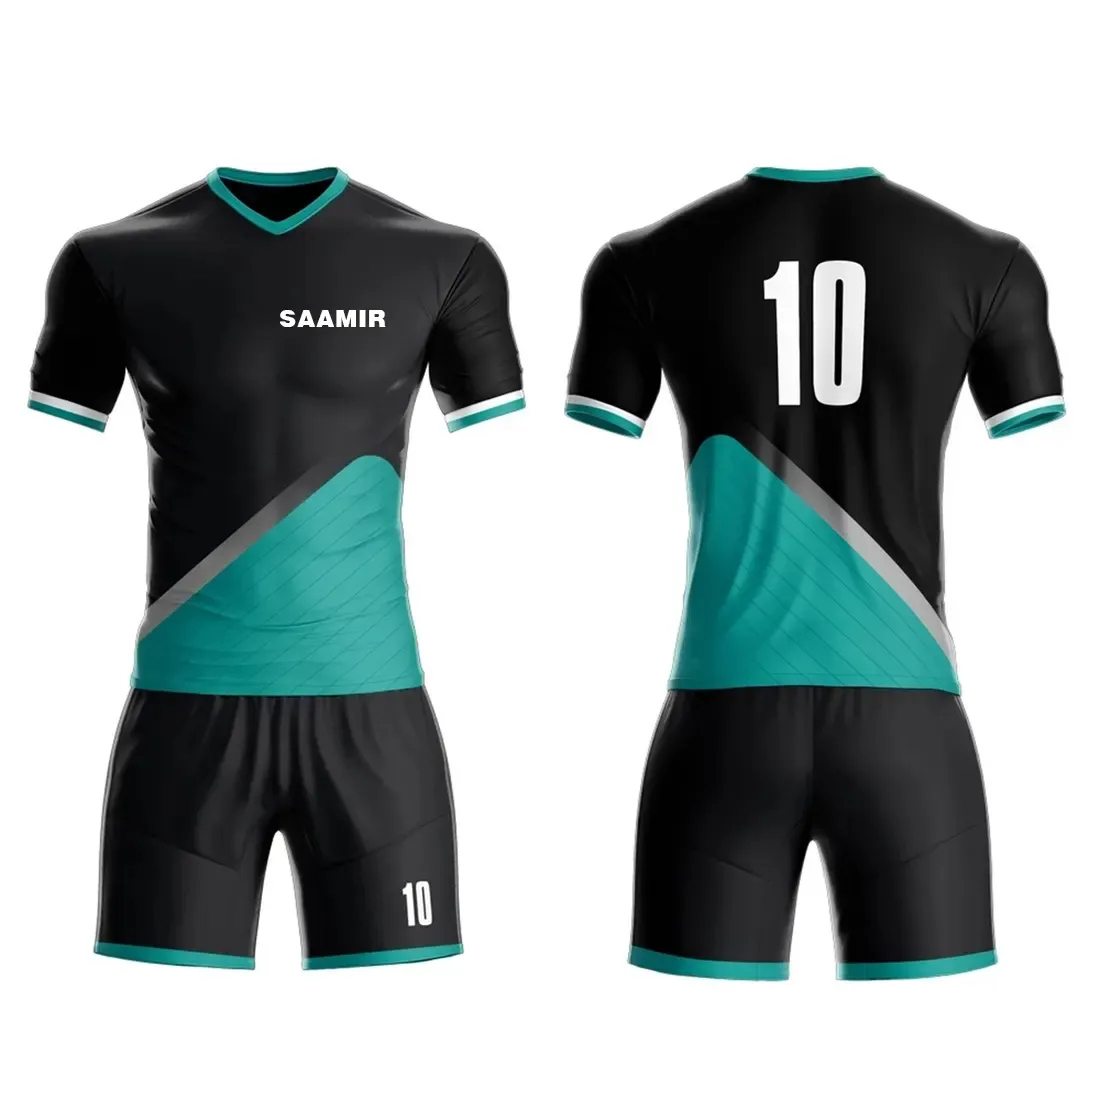 Uniforme de futebol esportivo confortável, camisa de futebol modelo mais recente, uniforme de futebol de qualidade superior e preço barato